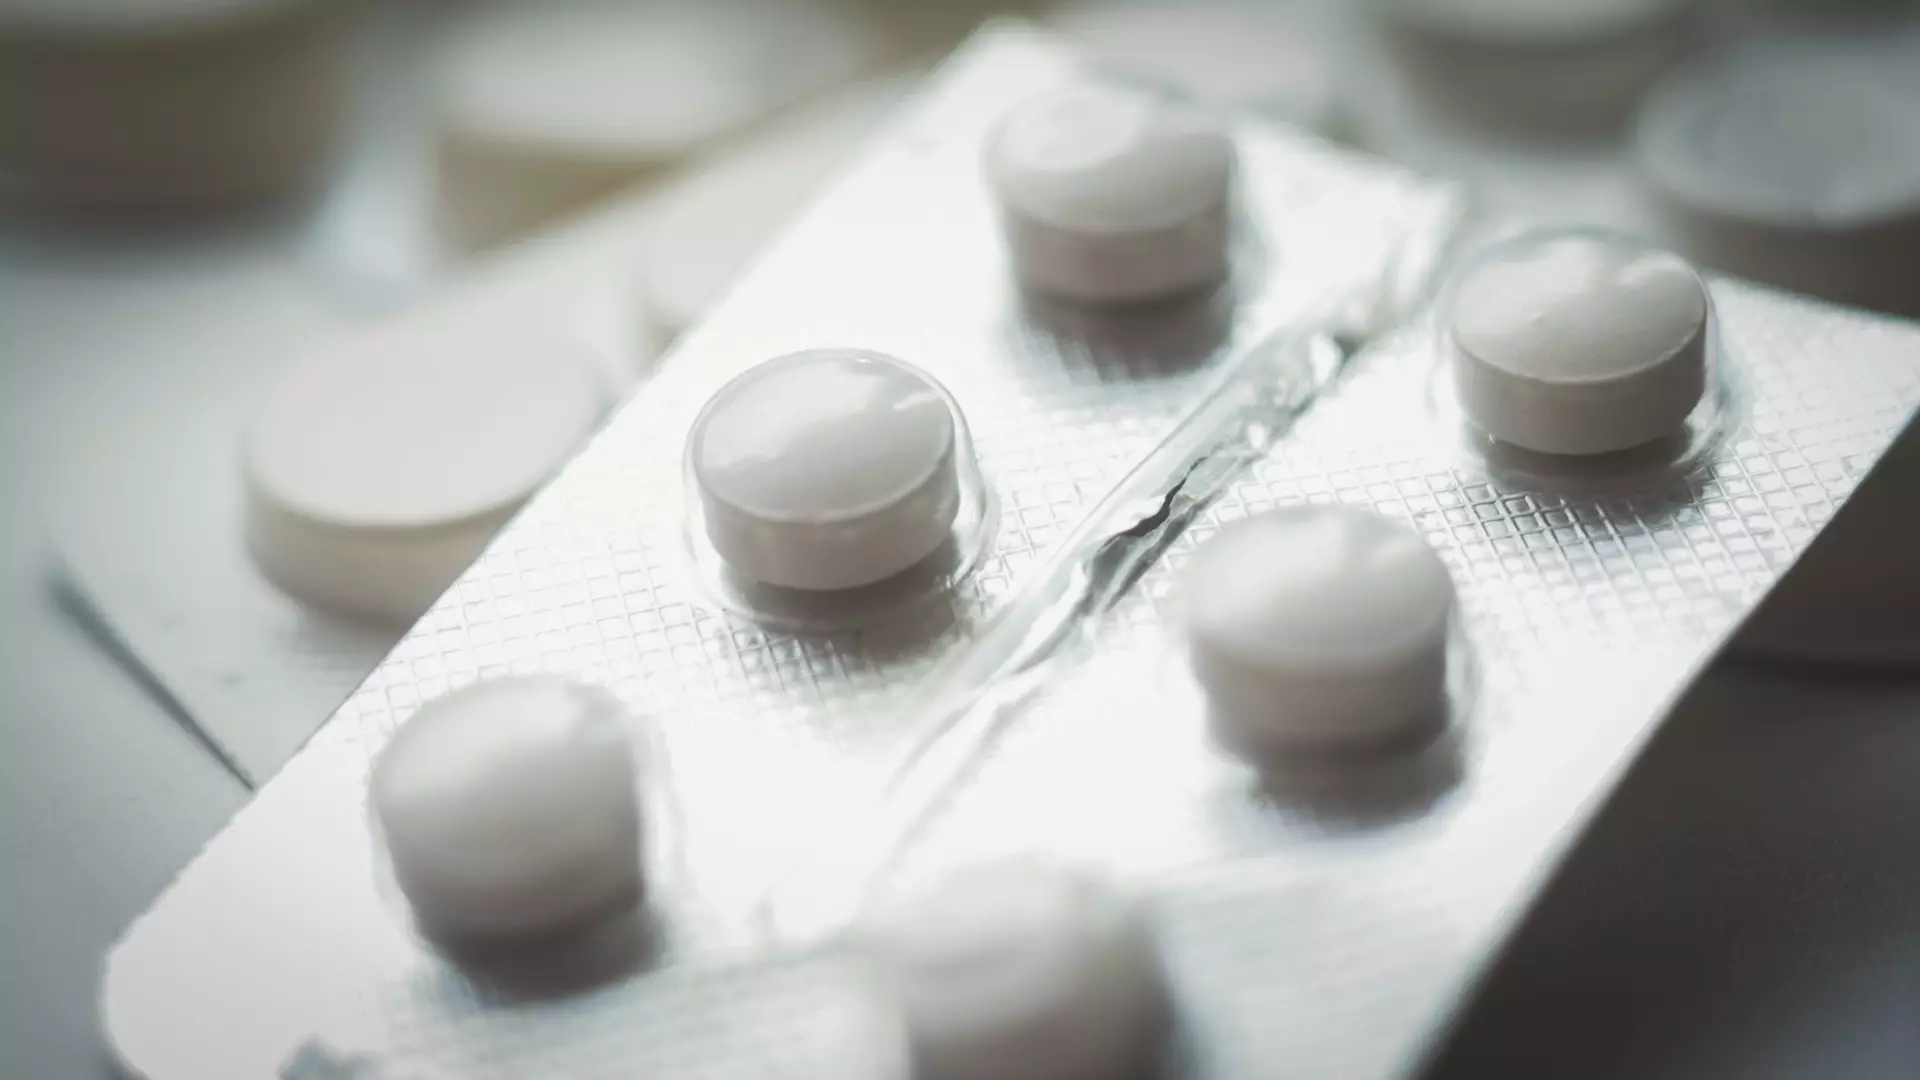 Онкологический препарат уромитексан пропал из нижегородских аптек